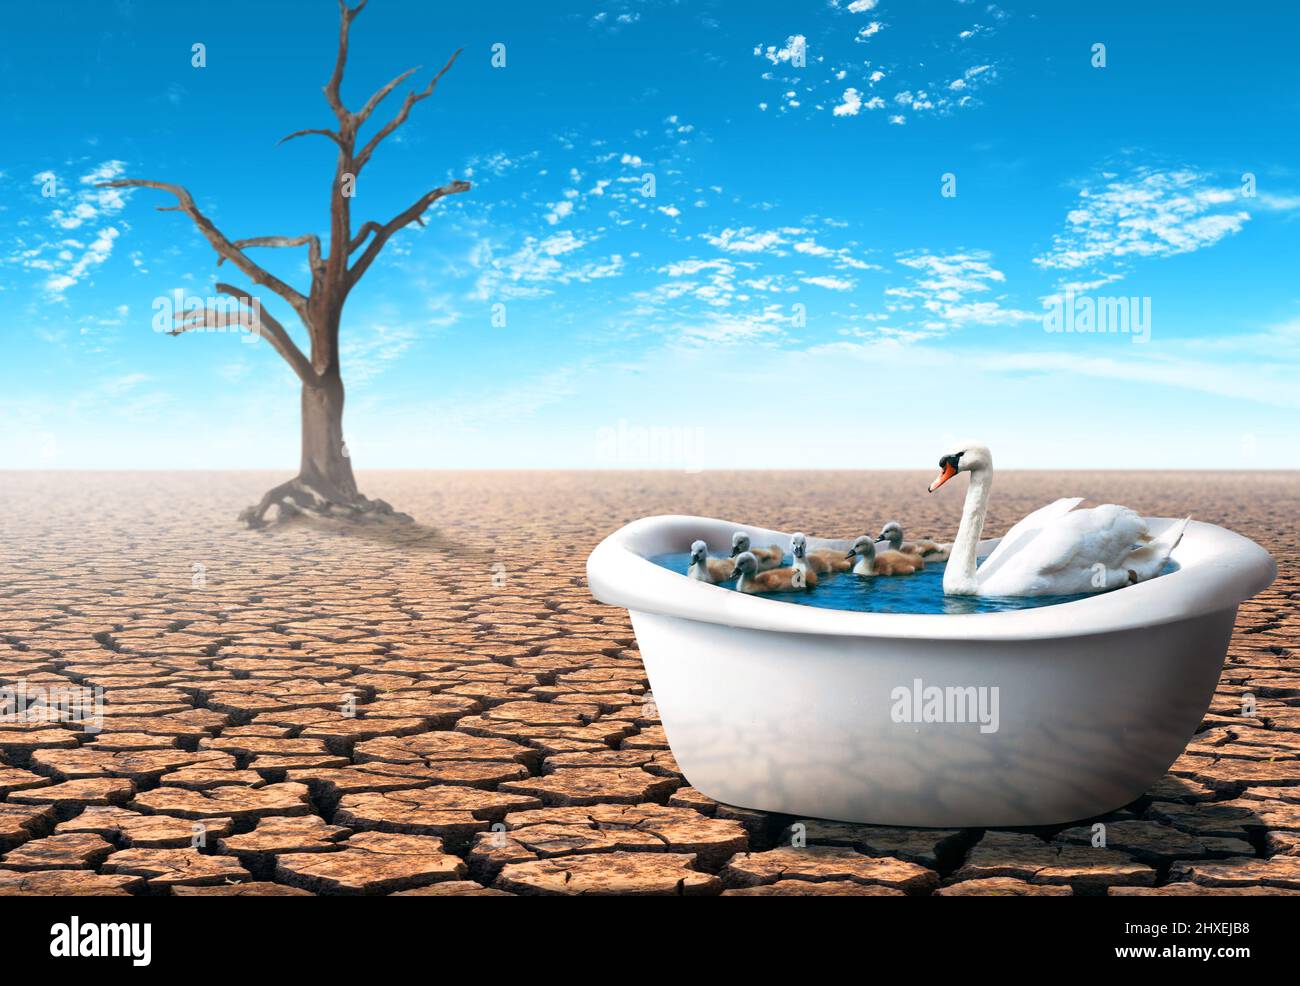 Swan con sus bebés dentro de una bañera en un desierto seco. Concepto de tema pandémico. Foto de stock